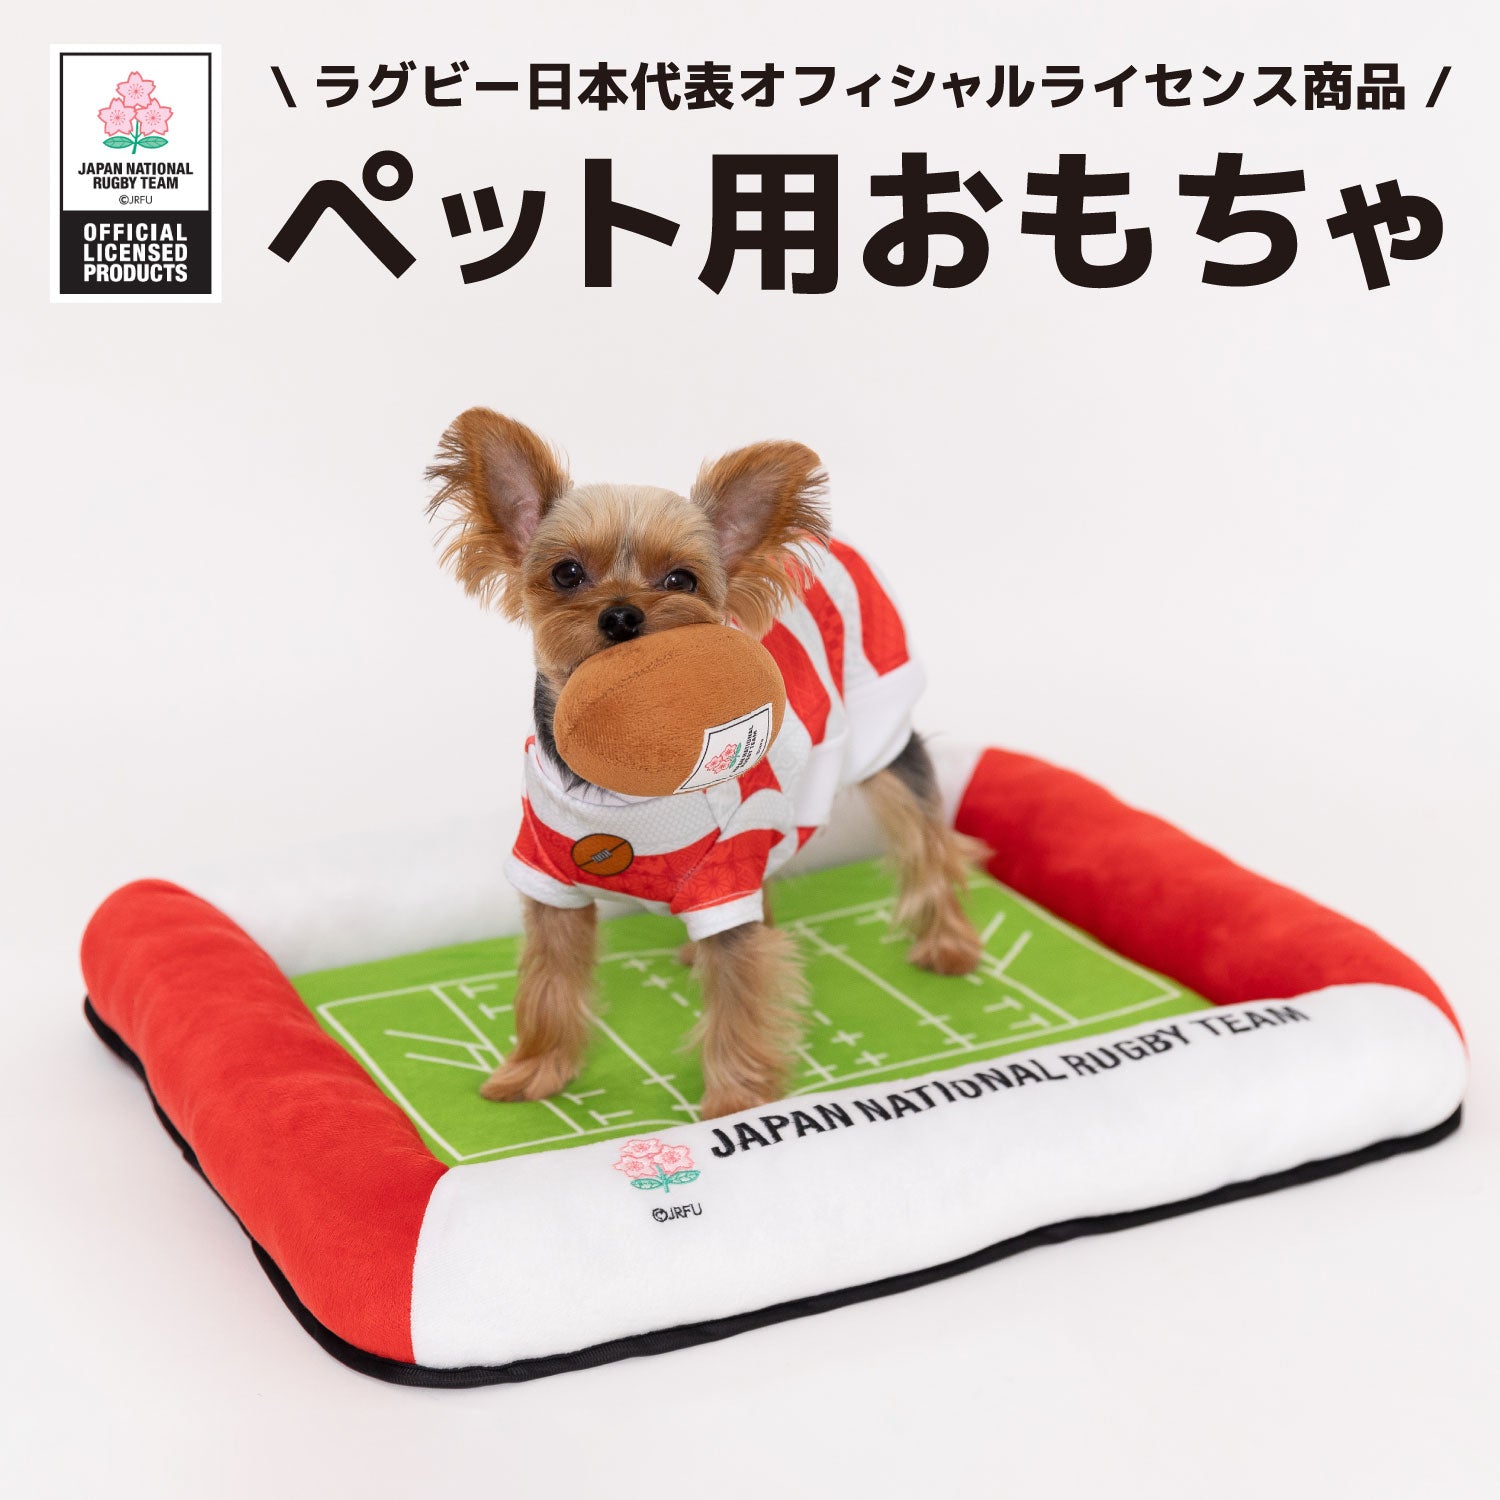 ラグビー日本代表 ボールトイ  犬のおもちゃ - ラグビー日本代表公式ライセンス ペット商品